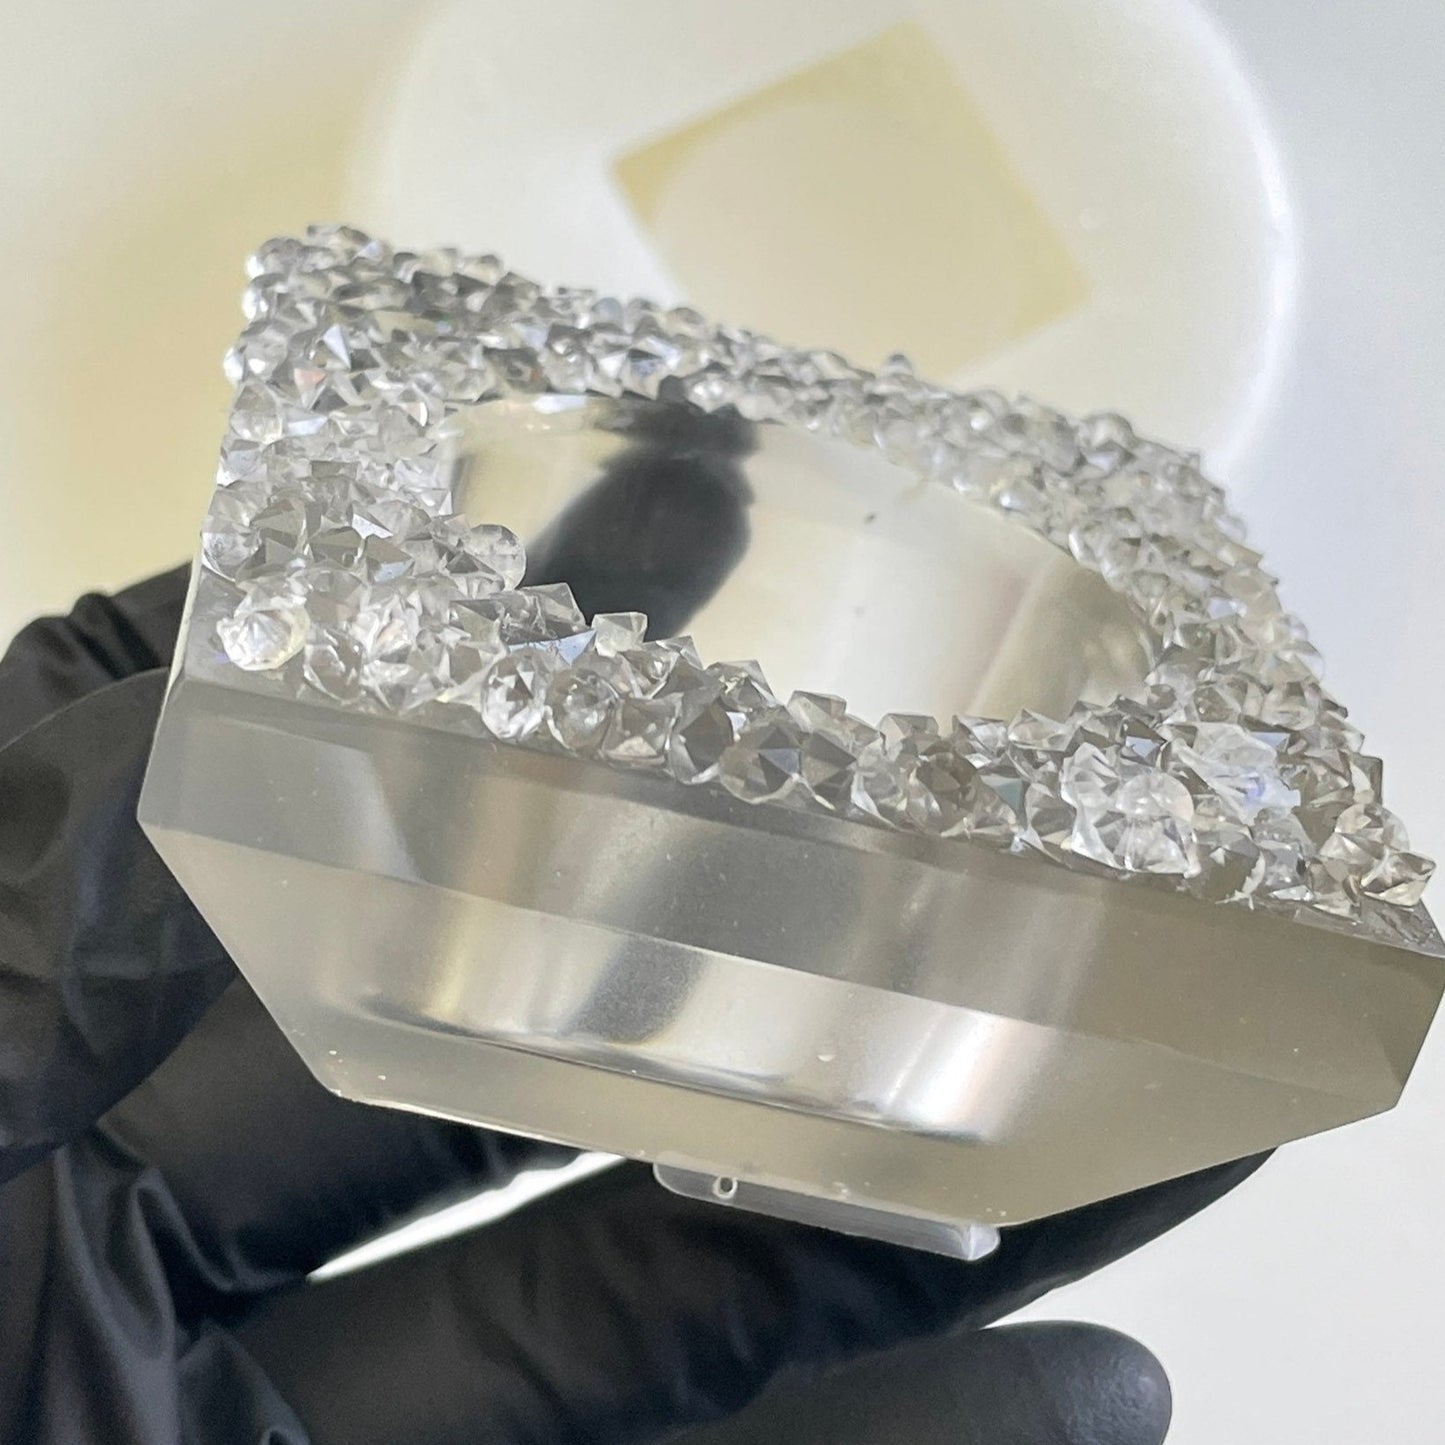 Kristall-Kerzenständer-Silikonform: Verschönern Sie die Kunst aus Epoxidharz mit schillernden Kerzenhaltern